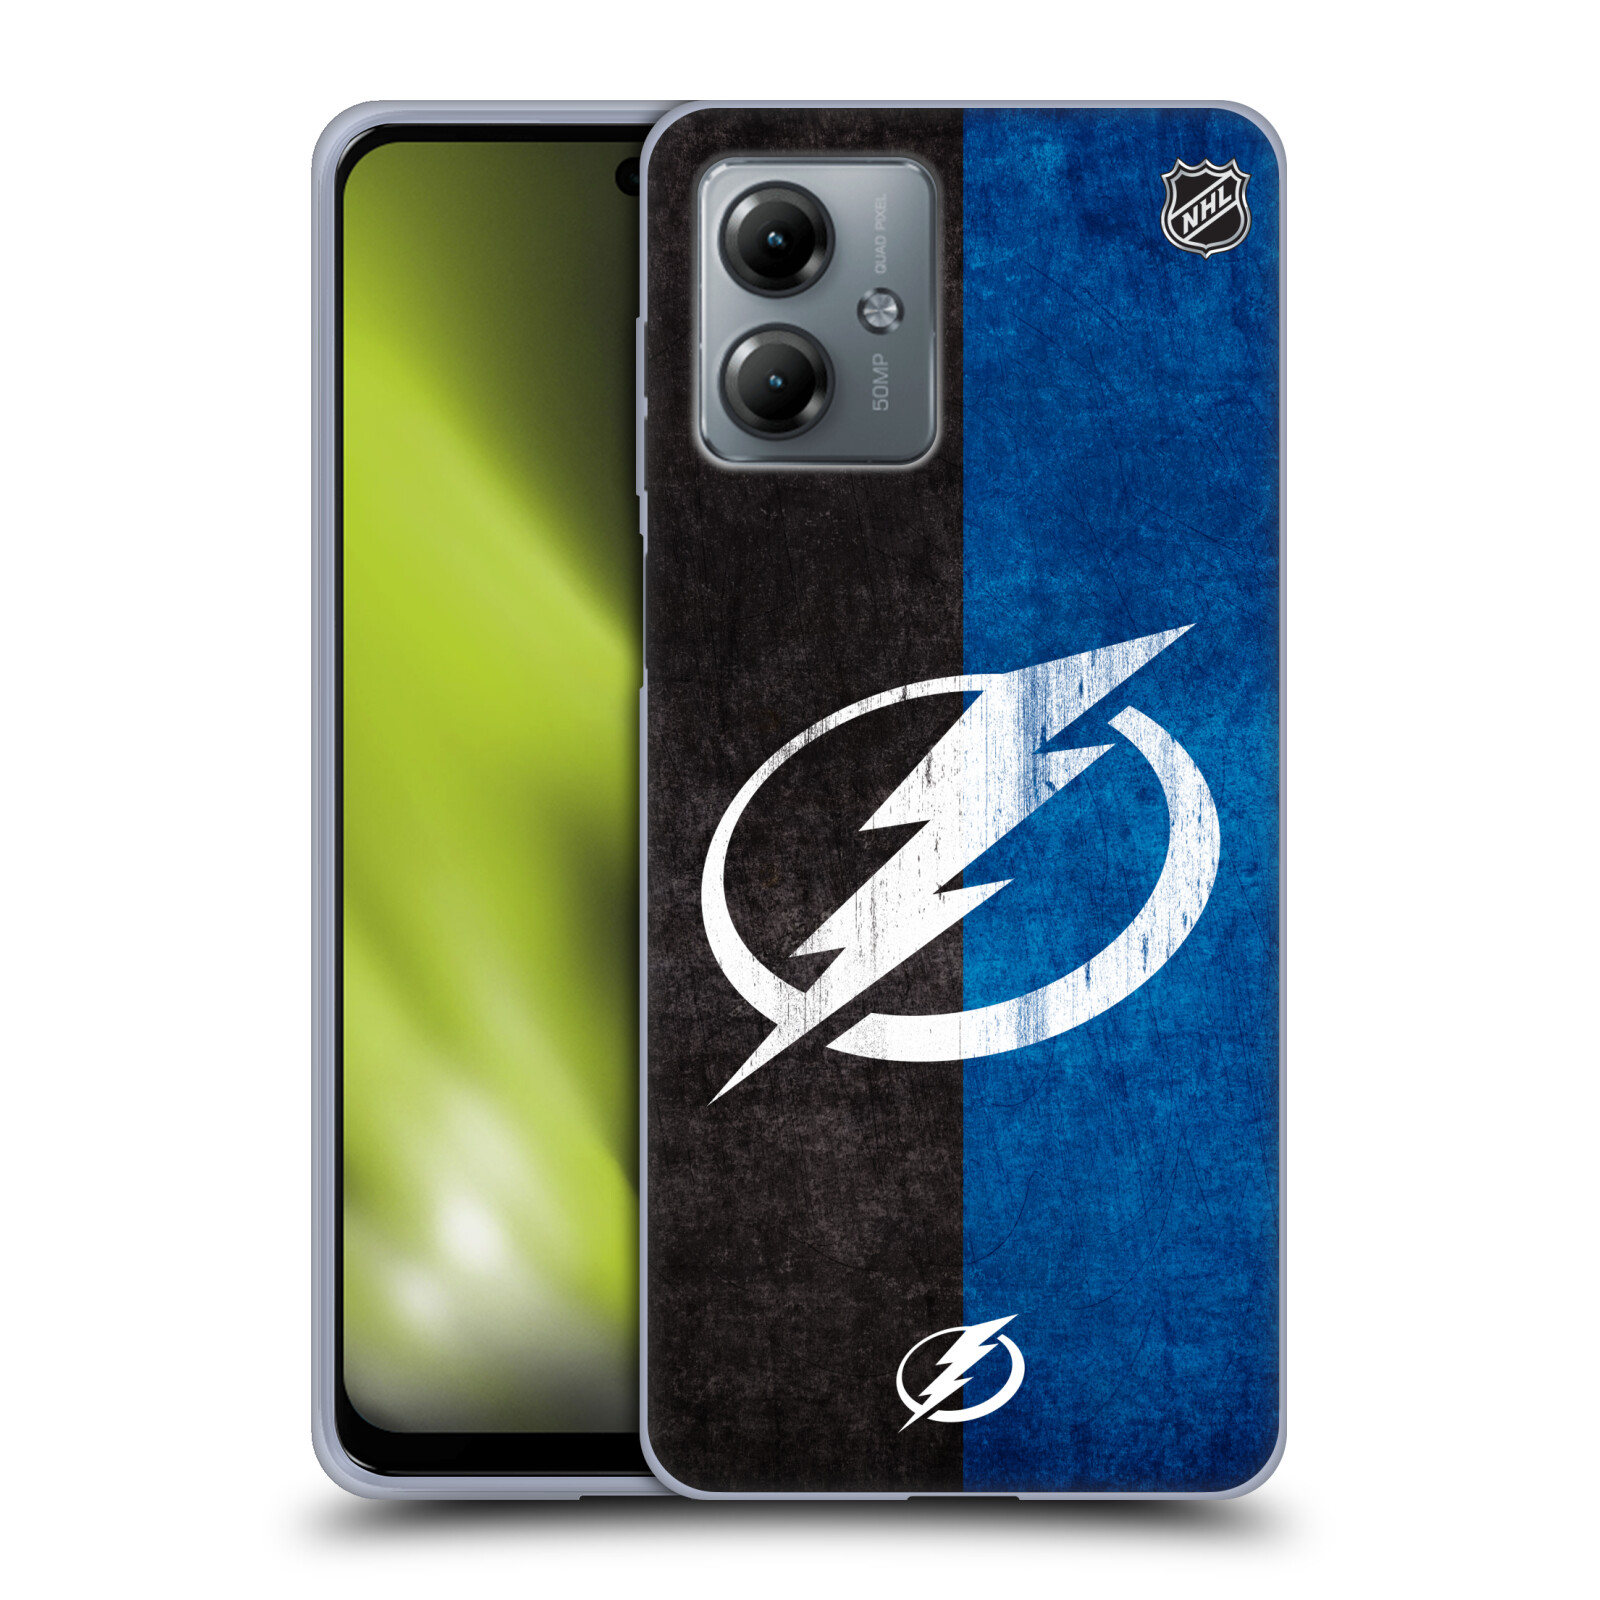 Silikonové pouzdro na mobil Motorola Moto G14 - NHL - Půlené logo Tampa Bay Lightning (Silikonový kryt, obal, pouzdro na mobilní telefon Motorola Moto G14 s licencovaným motivem NHL - Půlené logo Tampa Bay Lightning)